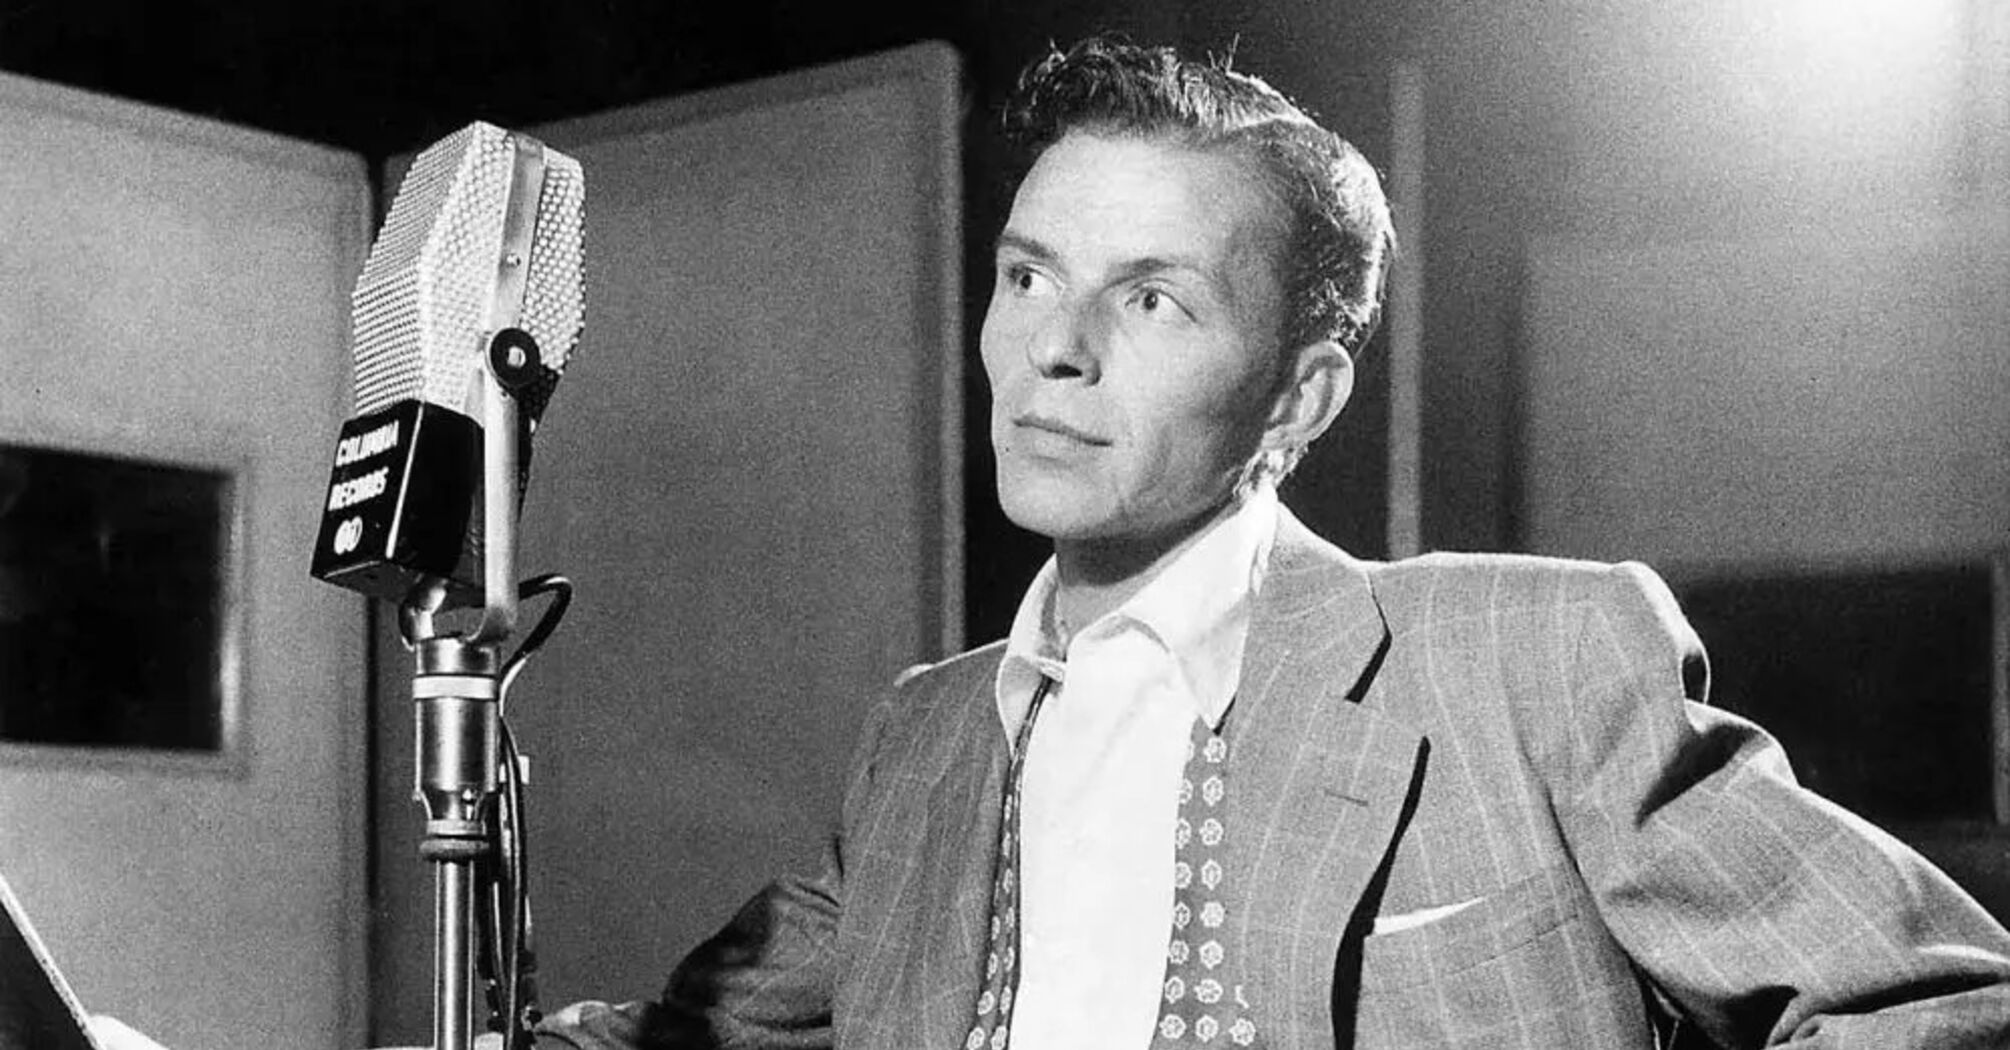 Frank Sinatra's hits